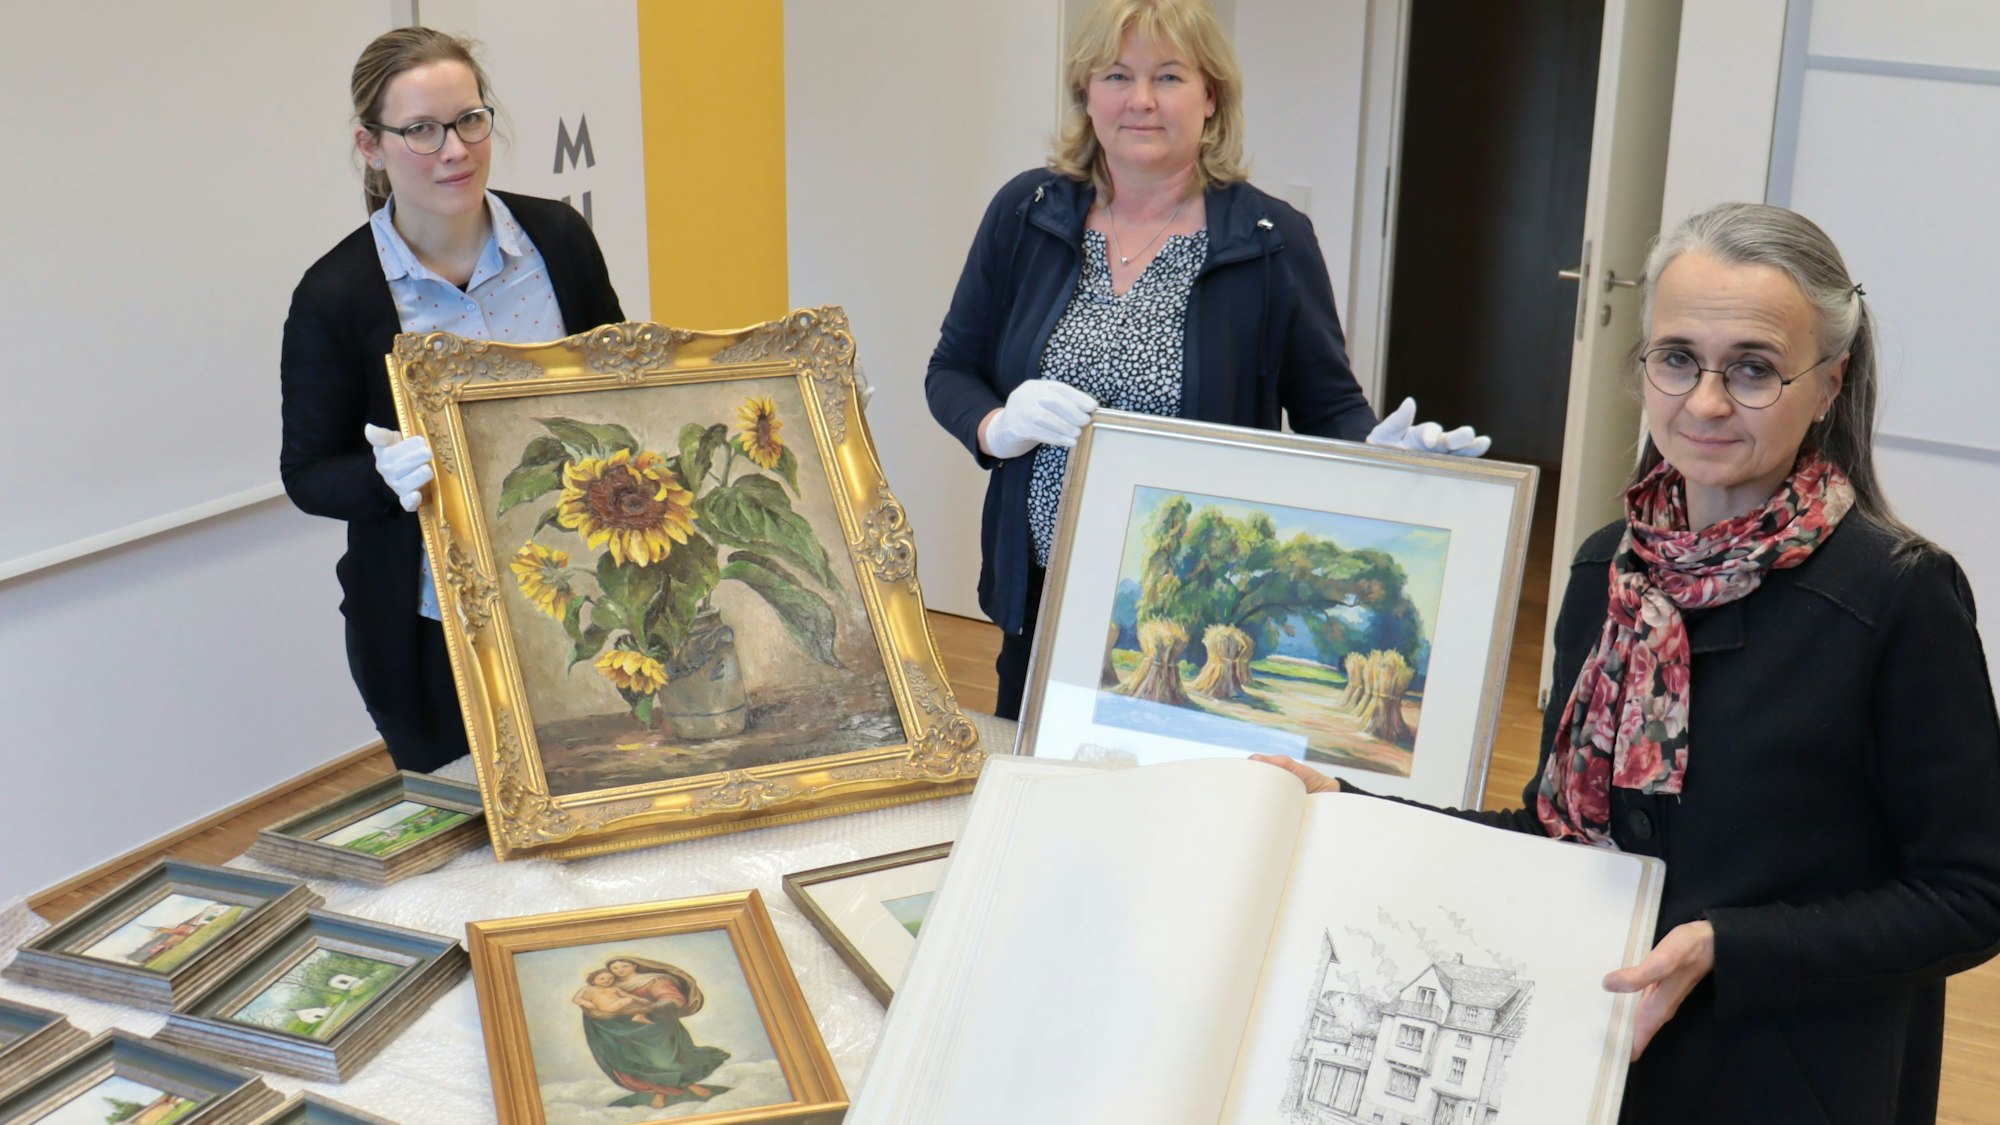 Zeichnungen und Gemälde des Euskirchener Malers Willy Loos, die Enkelin Iris Pütz an Leiterin Heike Lützenkirchen und deren Mitarbeiterin Jennifer Kirchhoff überreicht, sind auf einem Tisch ausgebreitet.